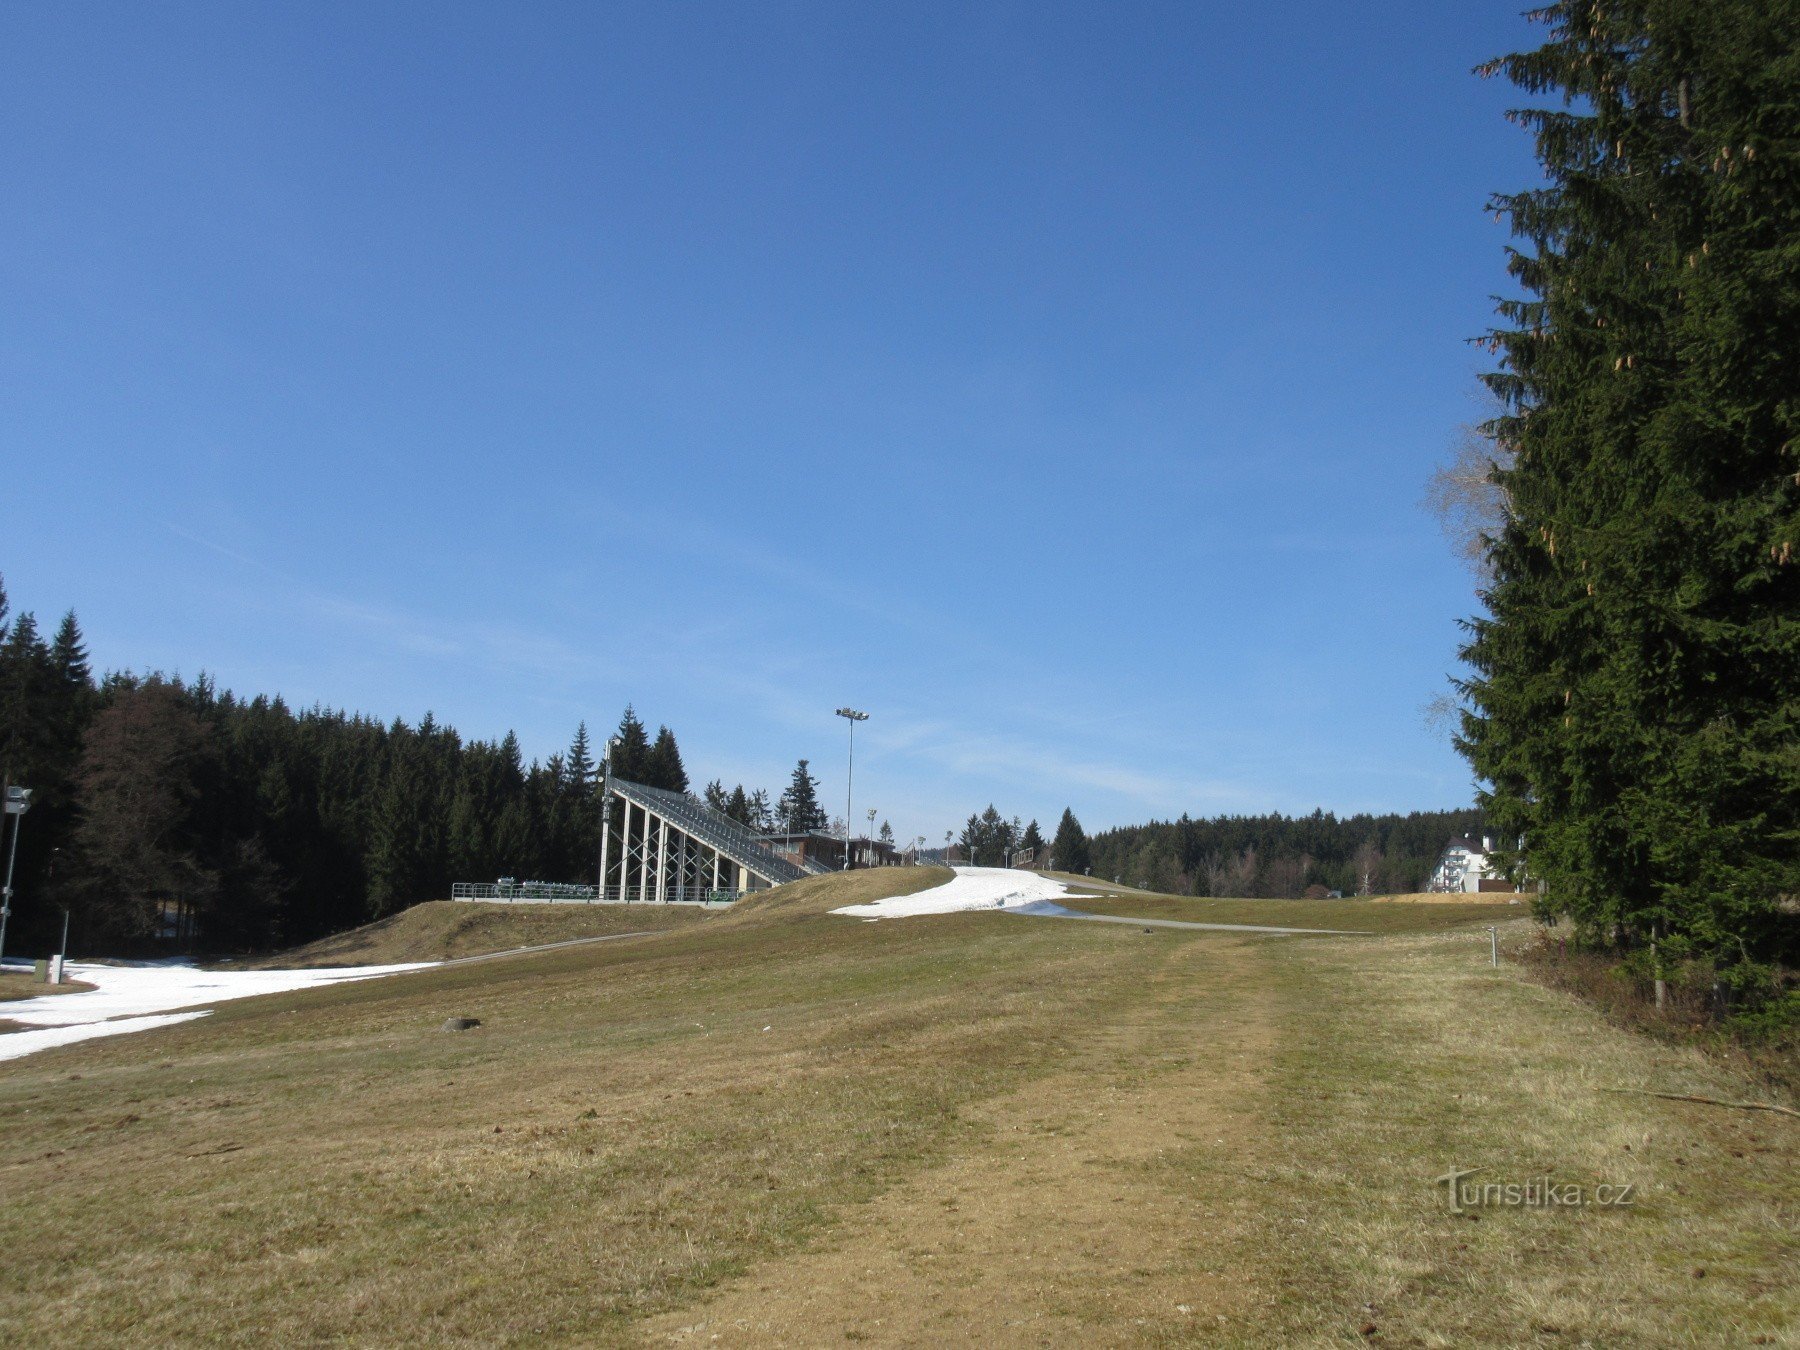 Nové Město – biathlon complex Vysočina arena and the history of winter sports